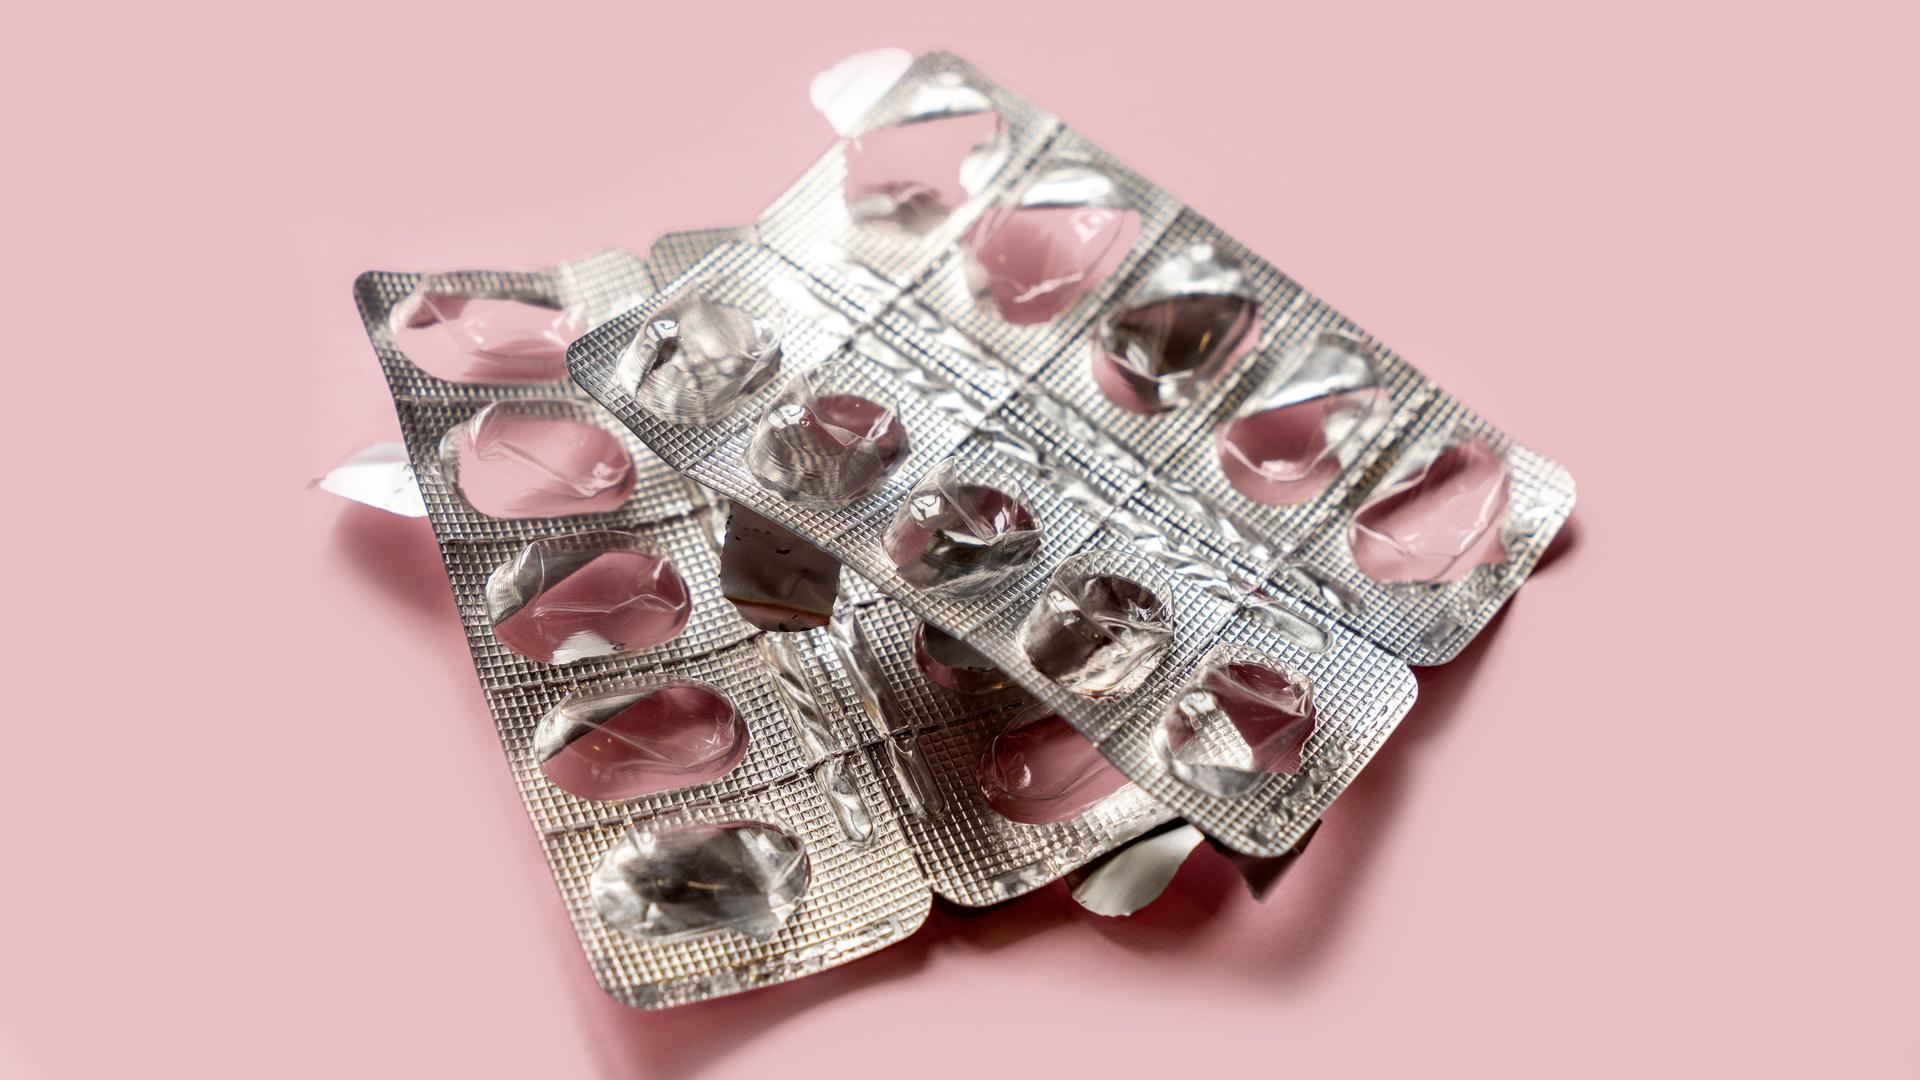 Eine leere Medikamentenpackung auf einem rosa Hintergrund.